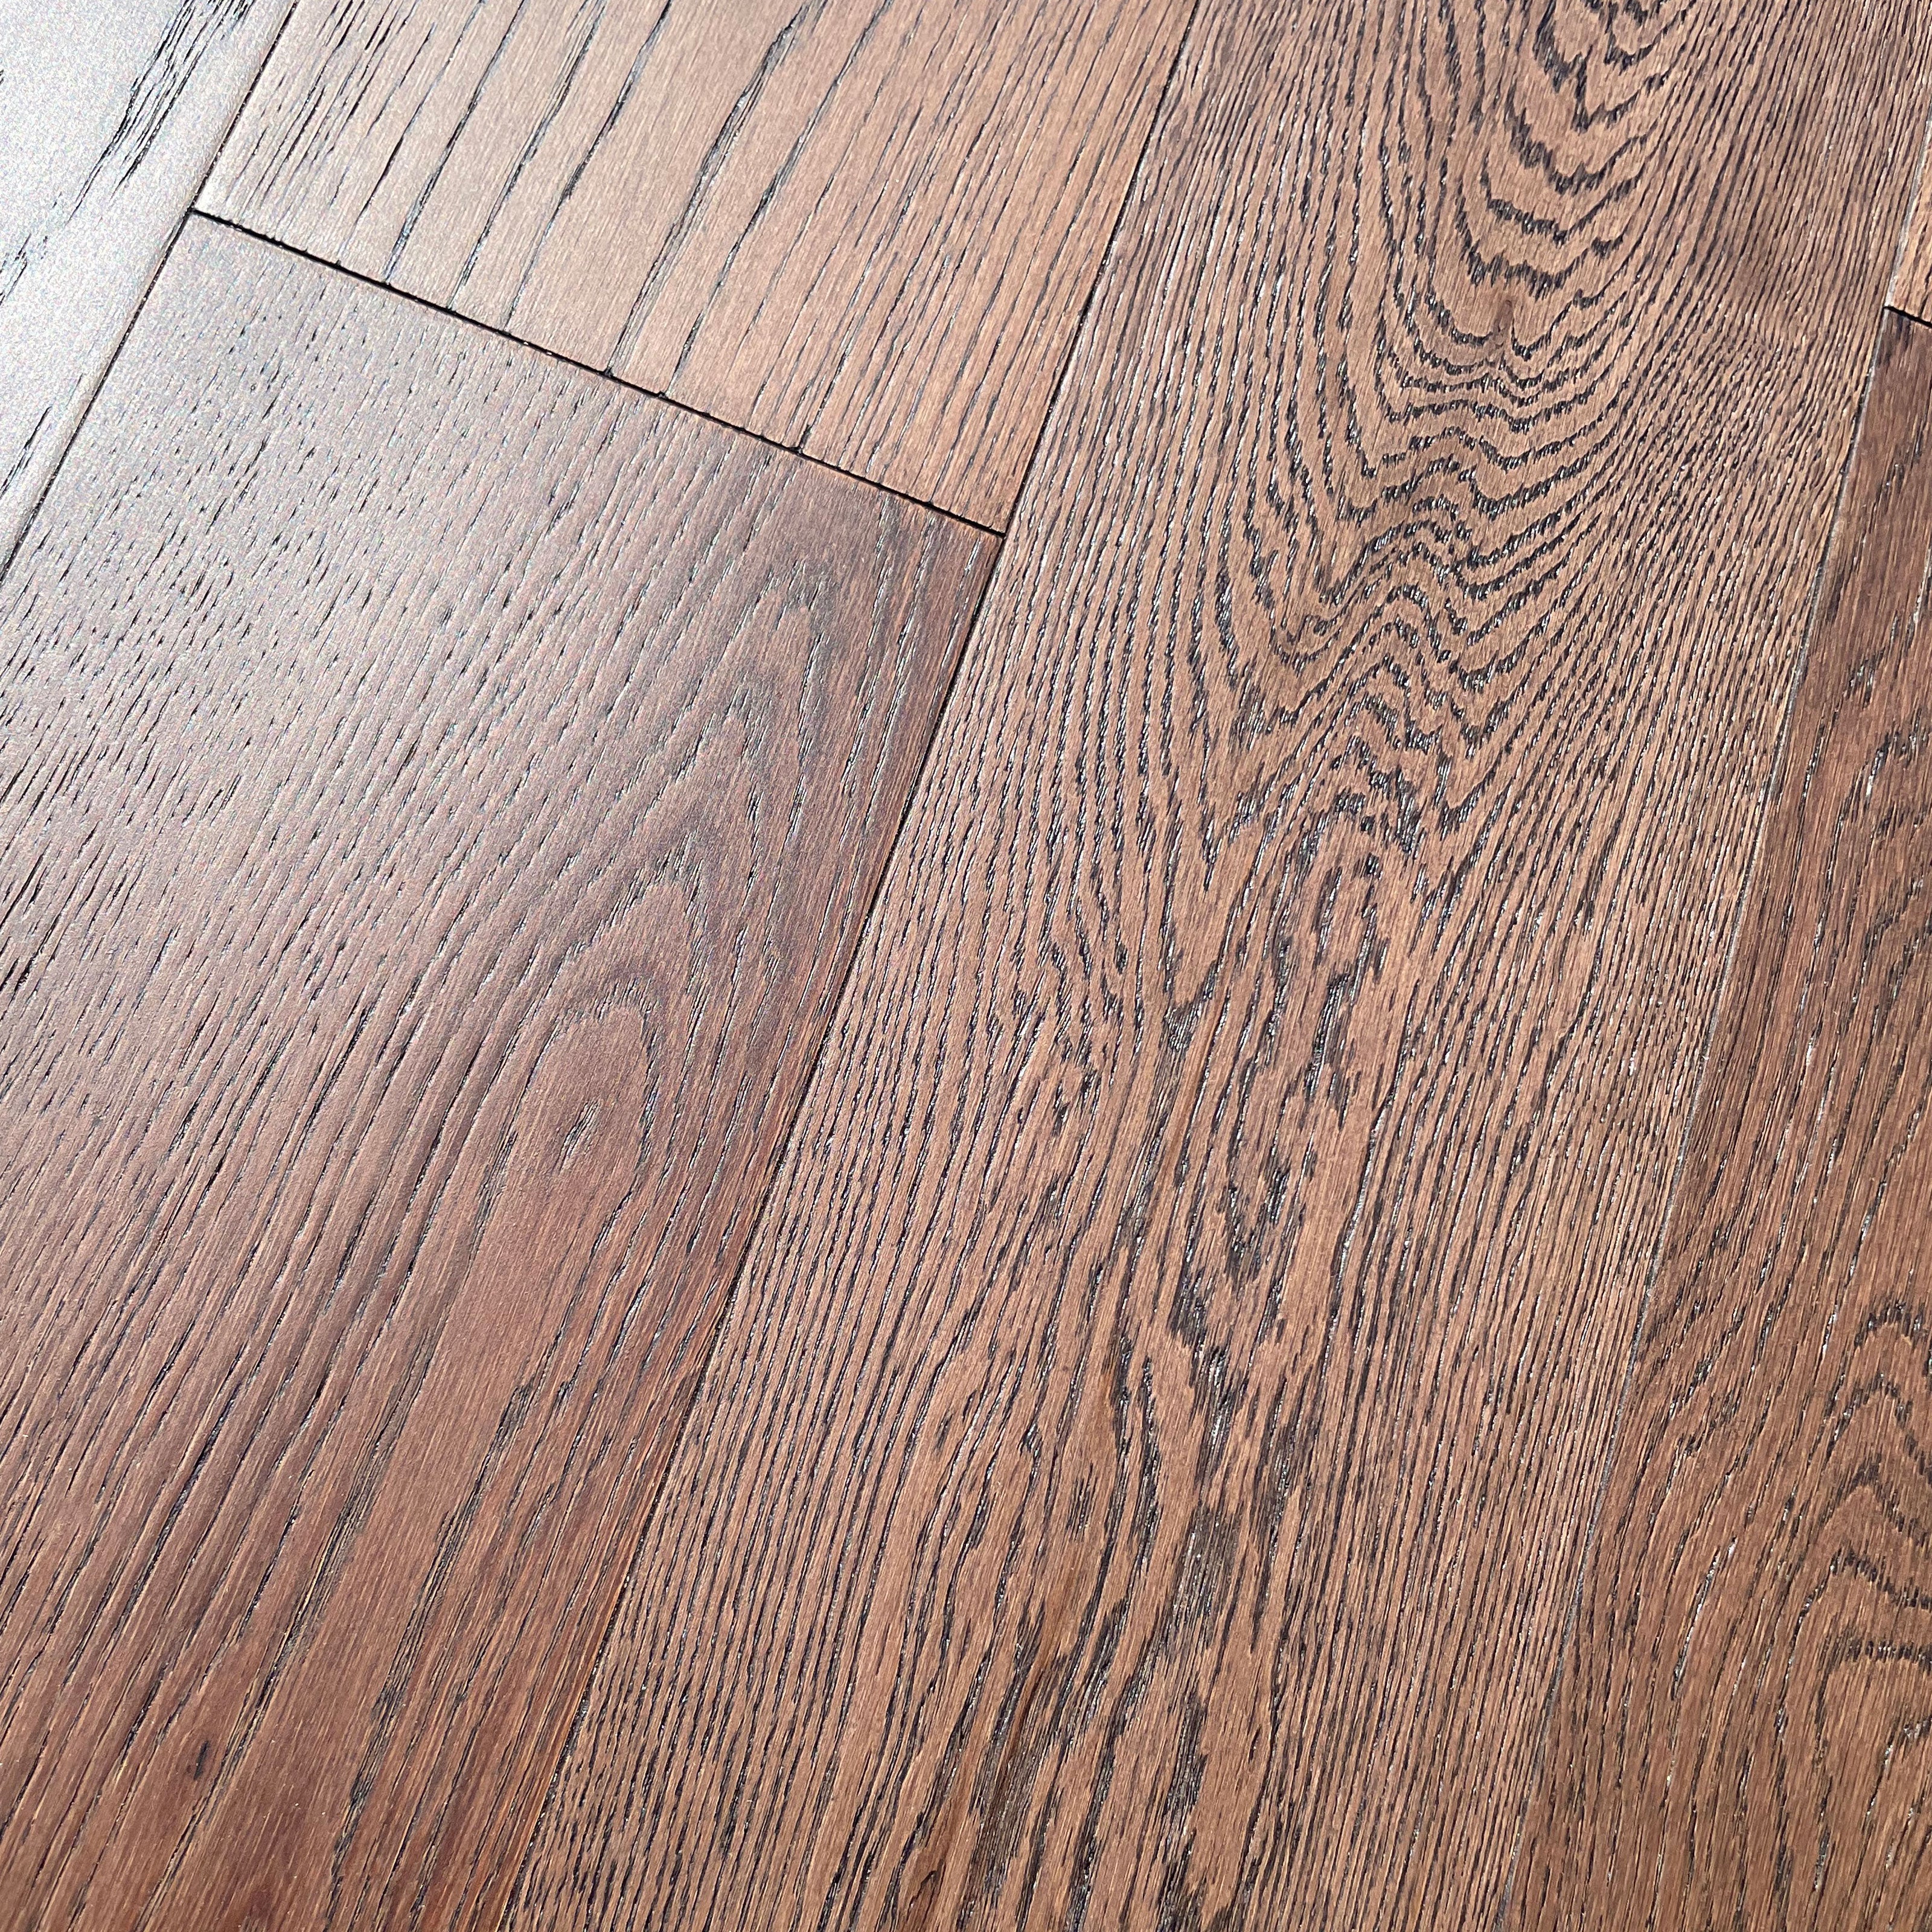 Pavimento in legno di rovere prefinito verniciato spazz. 10x125x900 linea PLANET mod. CAVES - Eternal Parquet